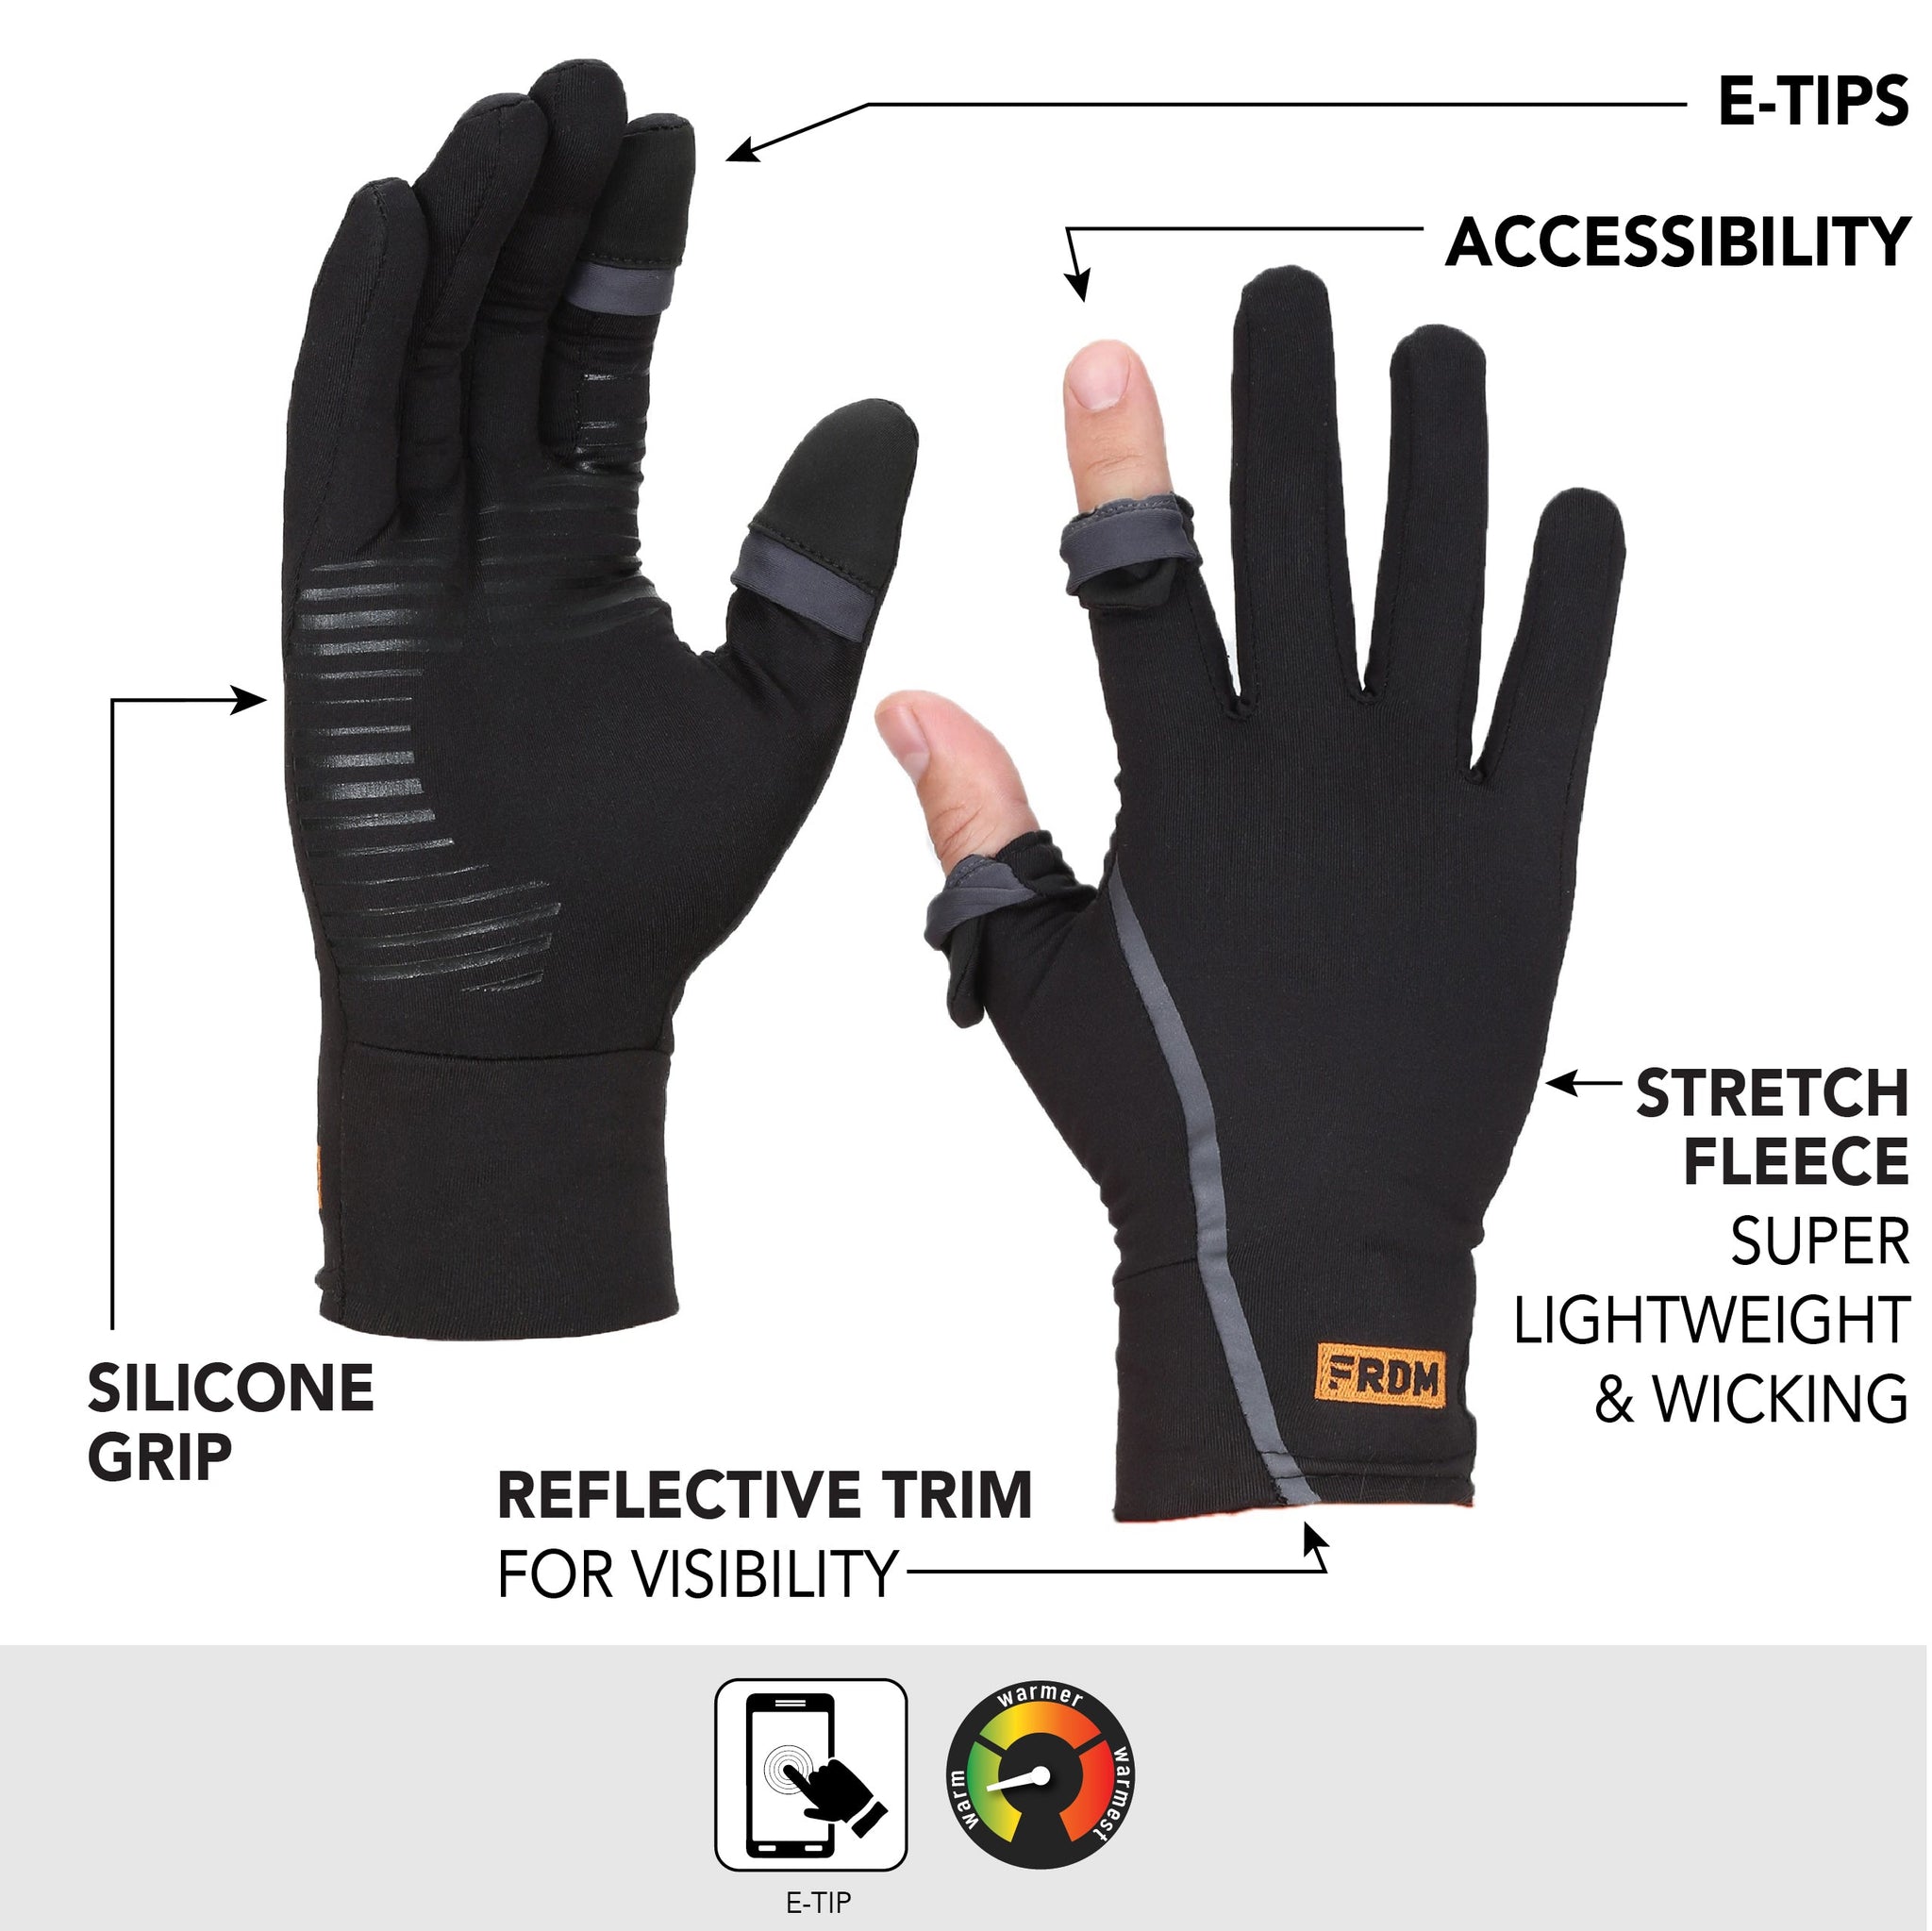 Vigor Lightweight Liner Gloves